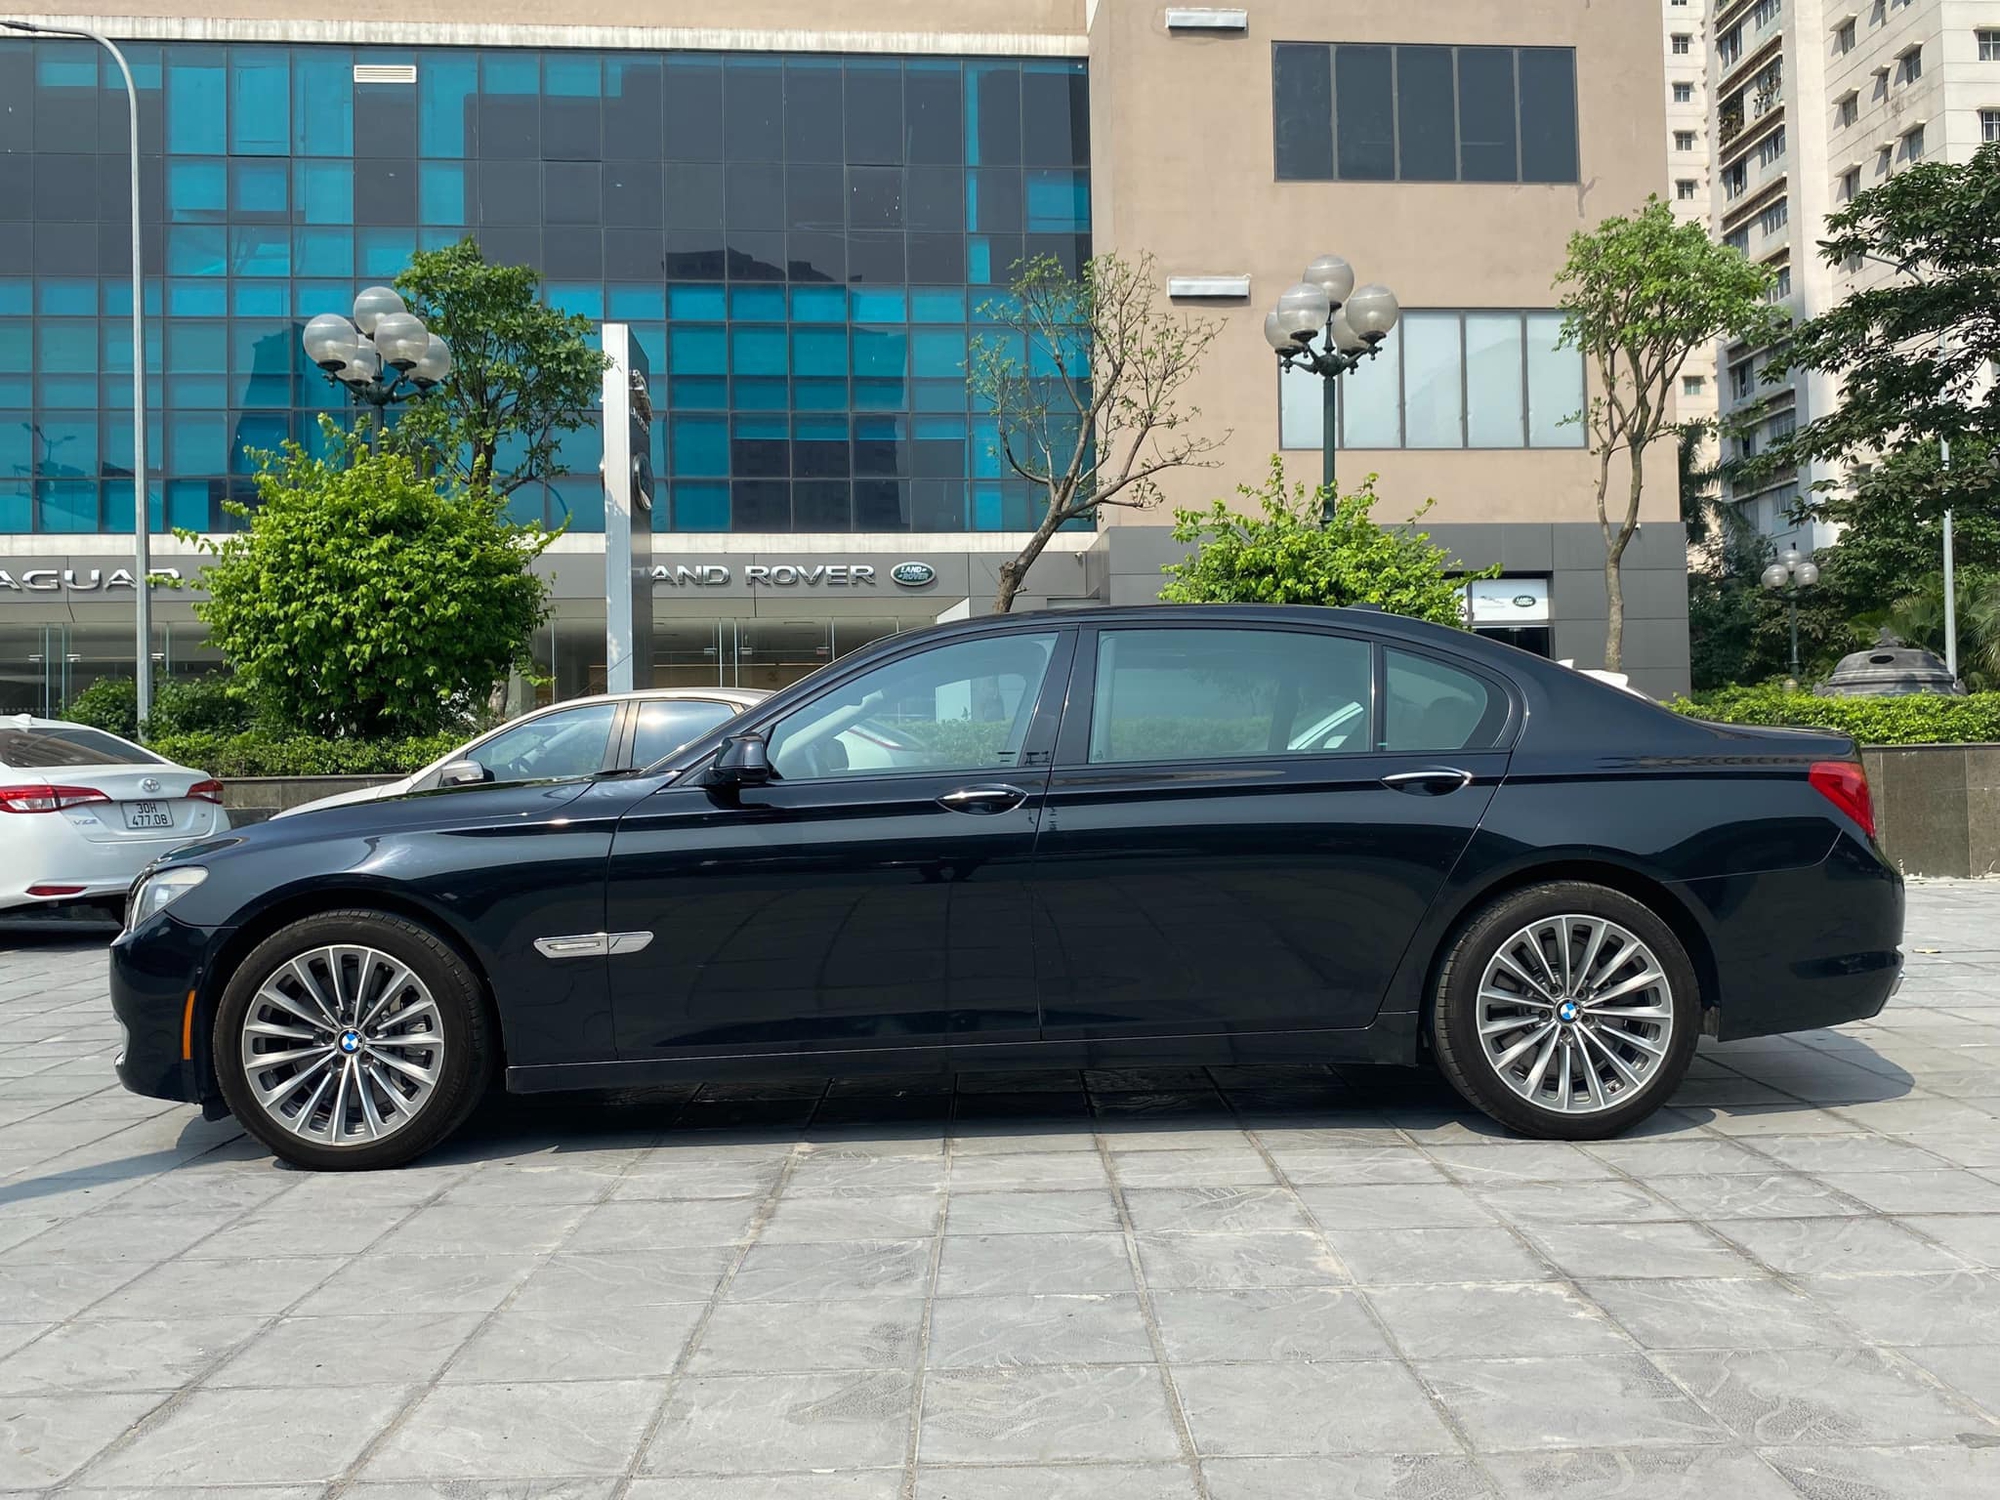 BMW 7-Series rao bán hơn nửa tỷ đồng: Người bán thổ lộ bán 'rẻ như cho' - Ảnh 2.